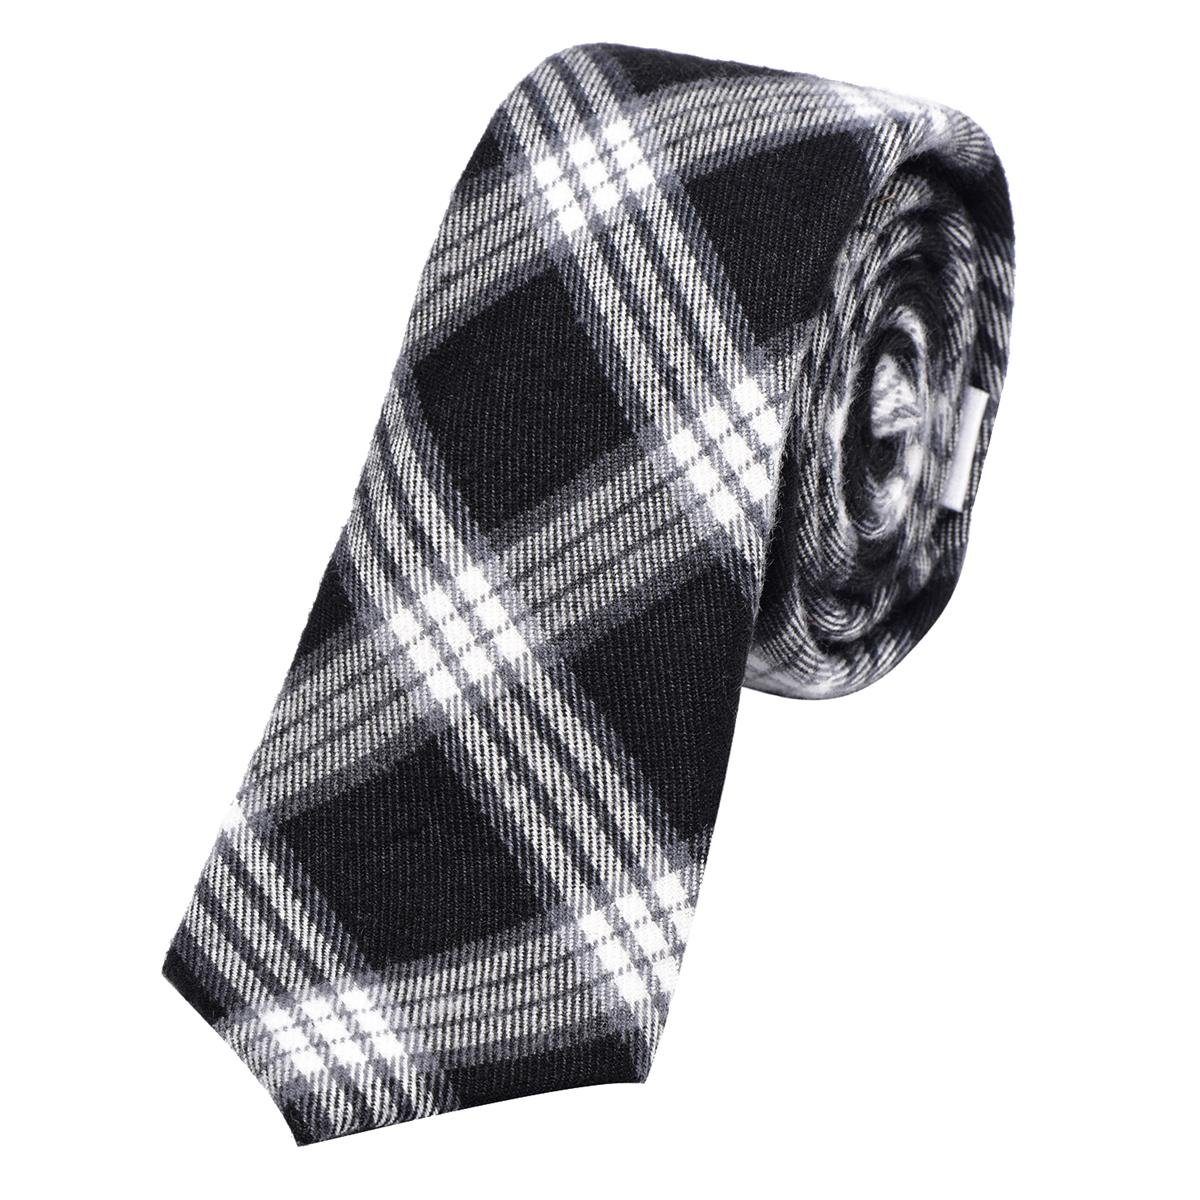 DonDon Krawatte Herren Krawatte 6 cm einfarbig kariert und gepunkt (Packung, 1-St., 1x Krawatte) Baumwolle, verschiedene Muster, für Büro oder festliche Veranstaltungen schwarz-weiß kariert